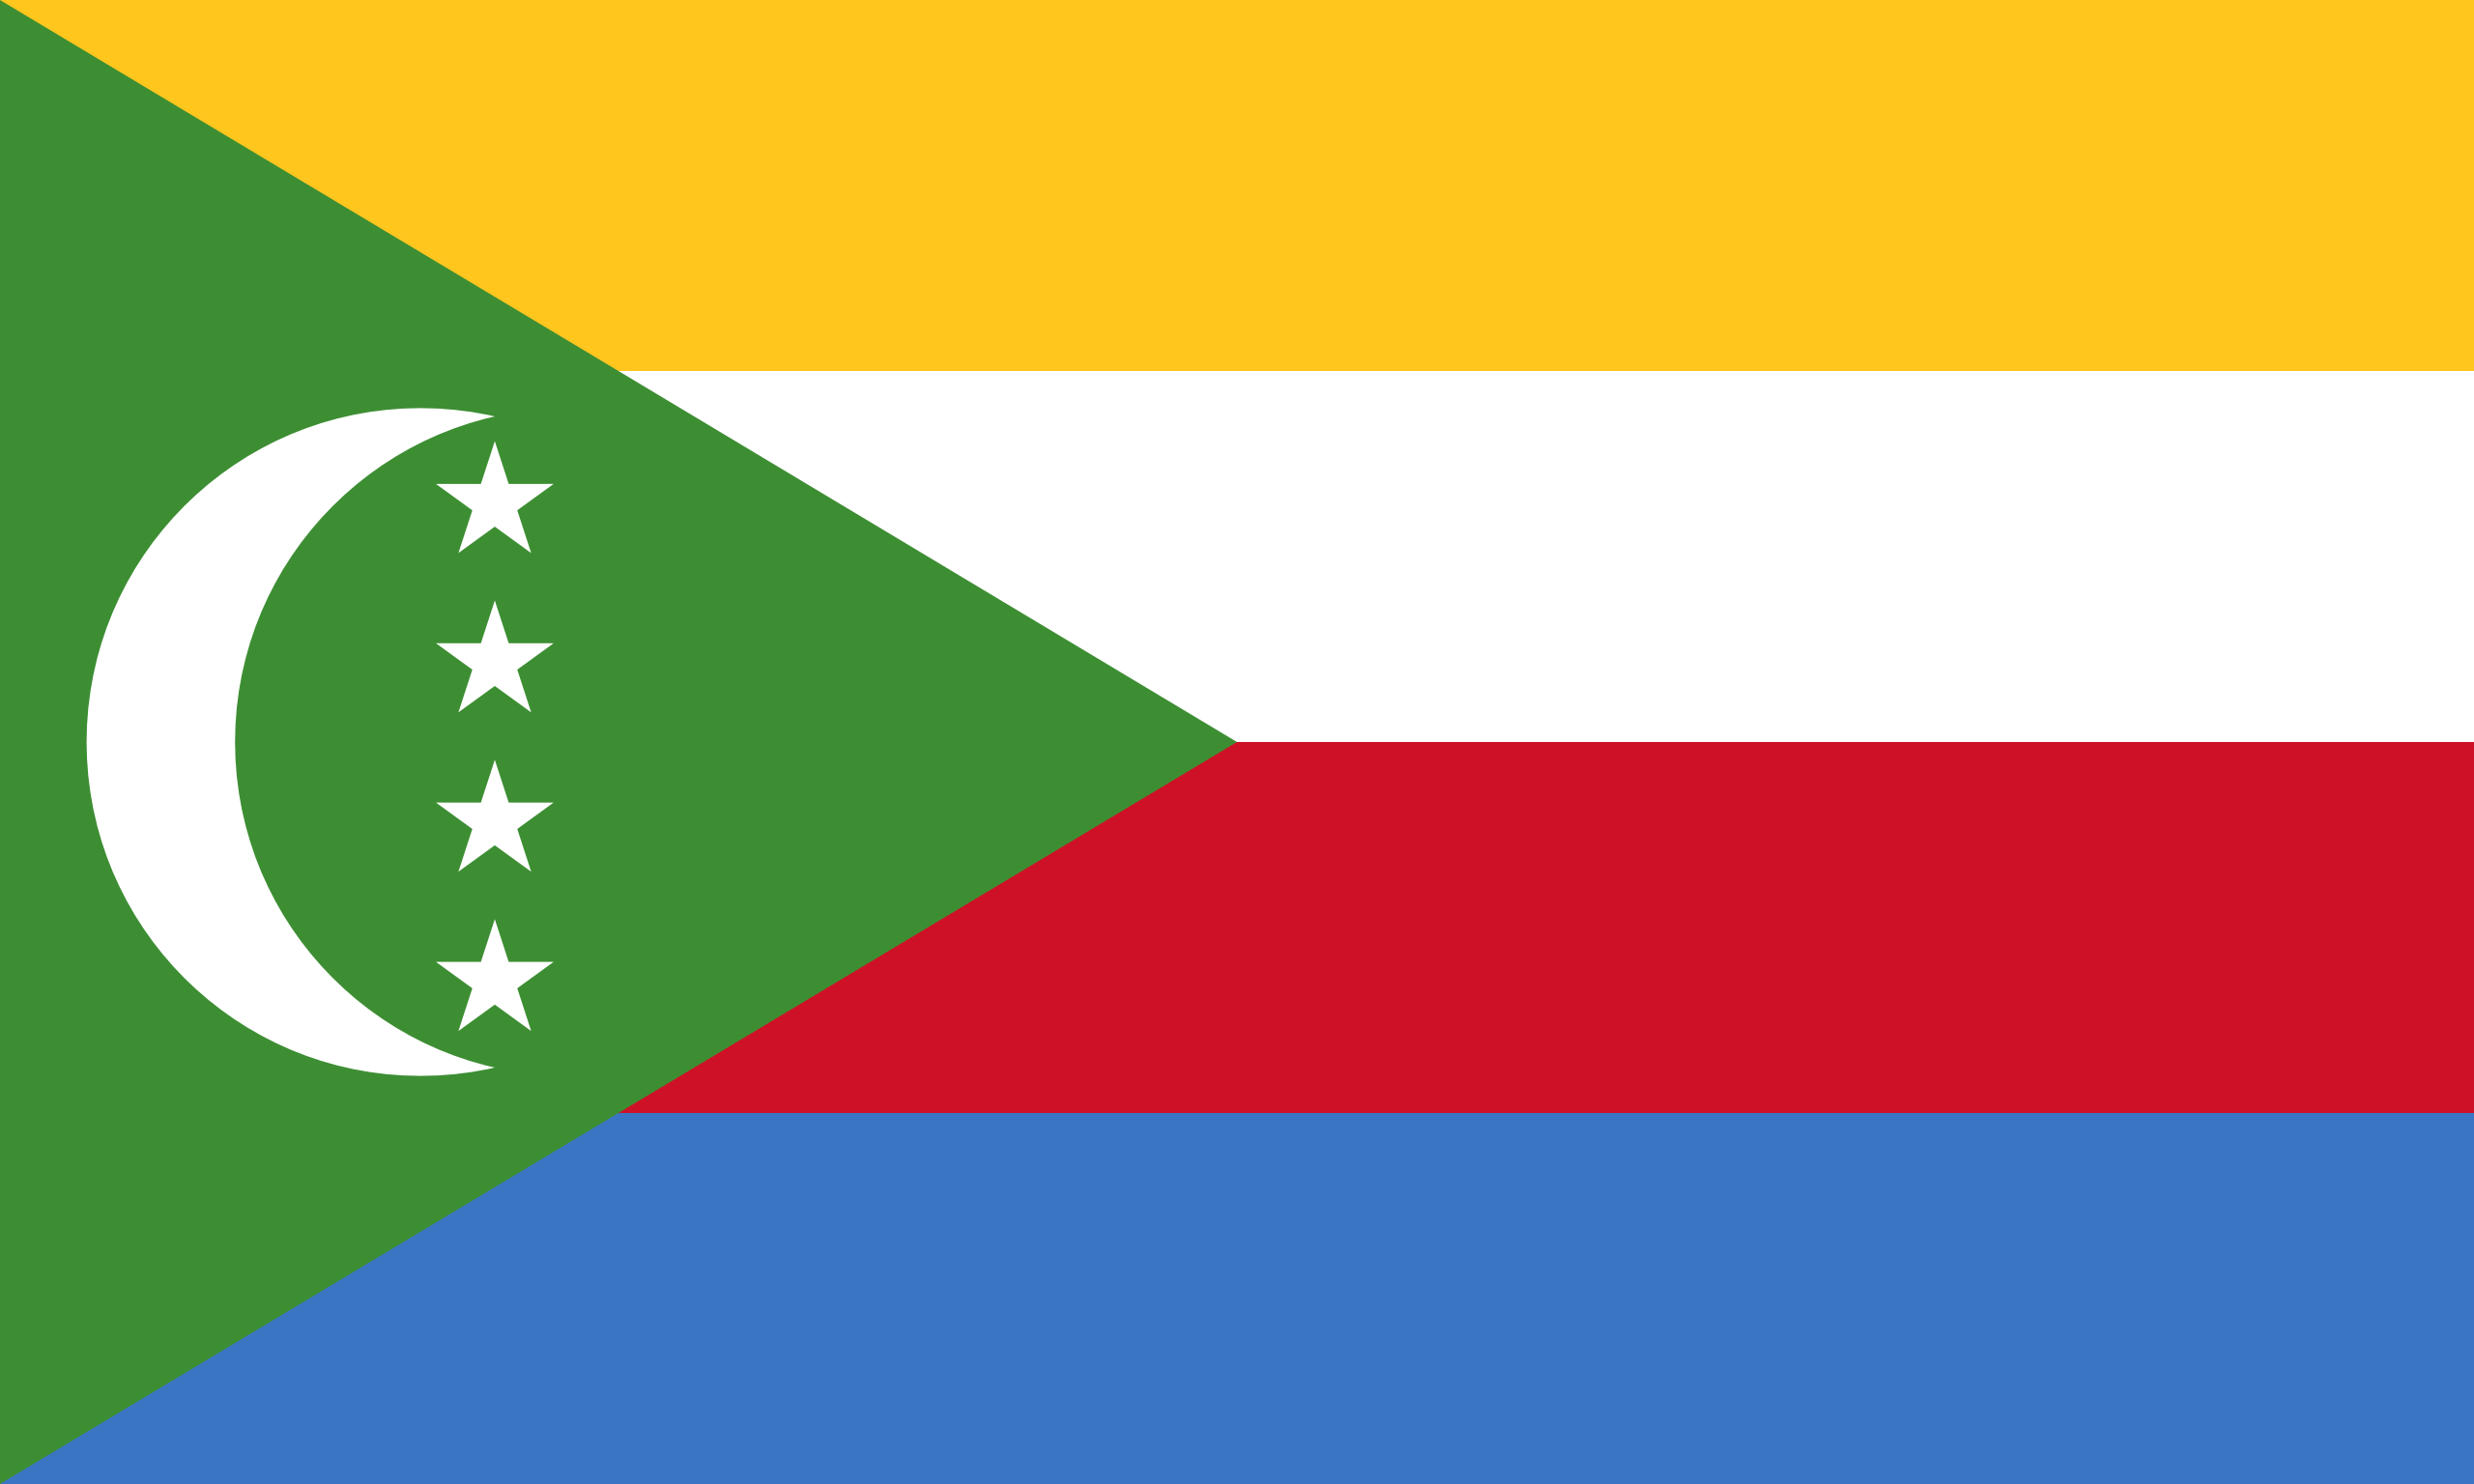 Comoros's flag